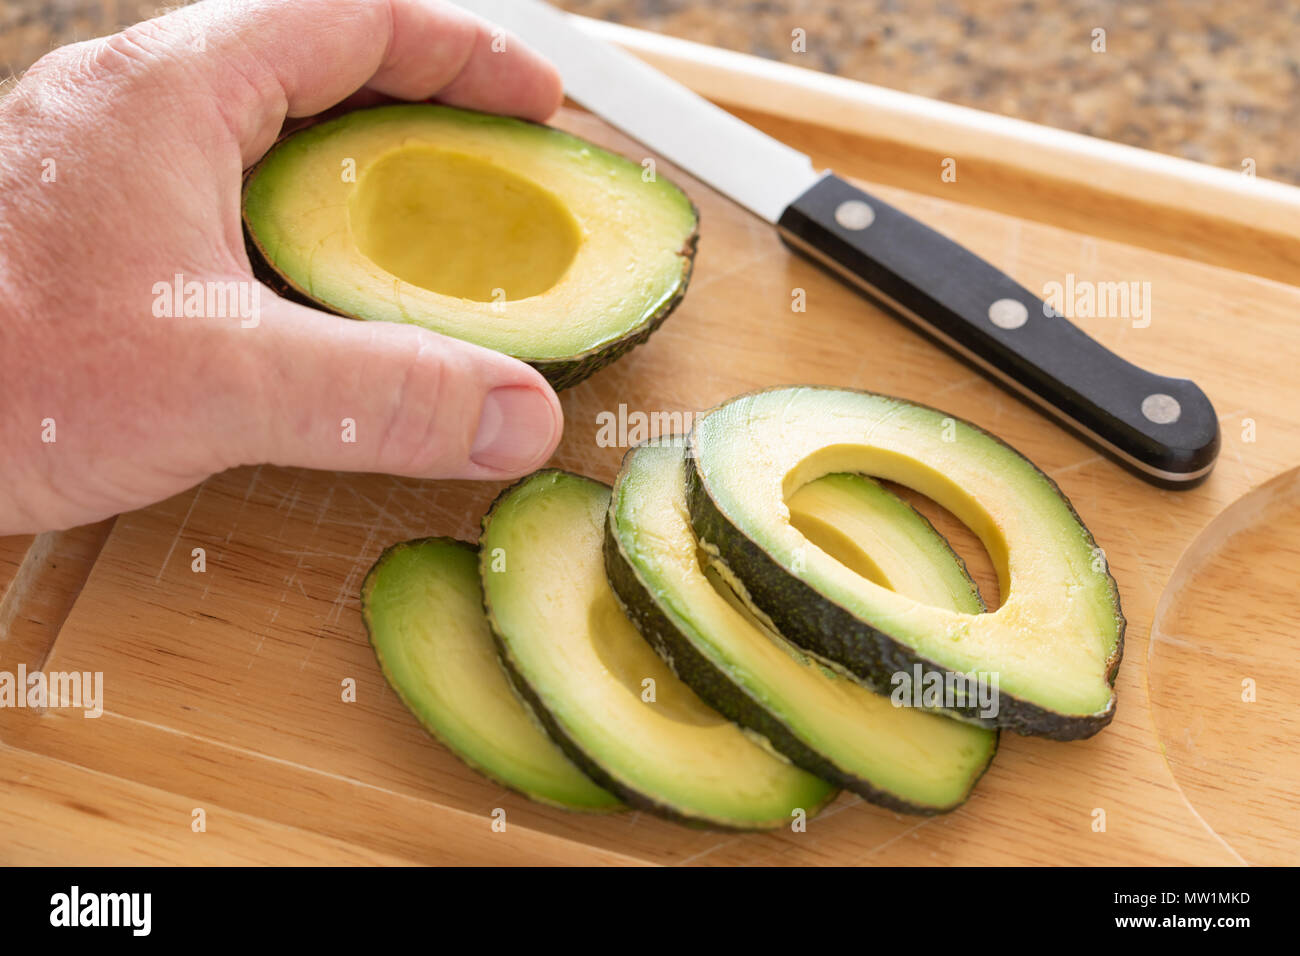 https://c8.alamy.com/comp/MW1MKD/male-hand-prepares-fresh-cut-avocado-on-wooden-cutting-board-MW1MKD.jpg